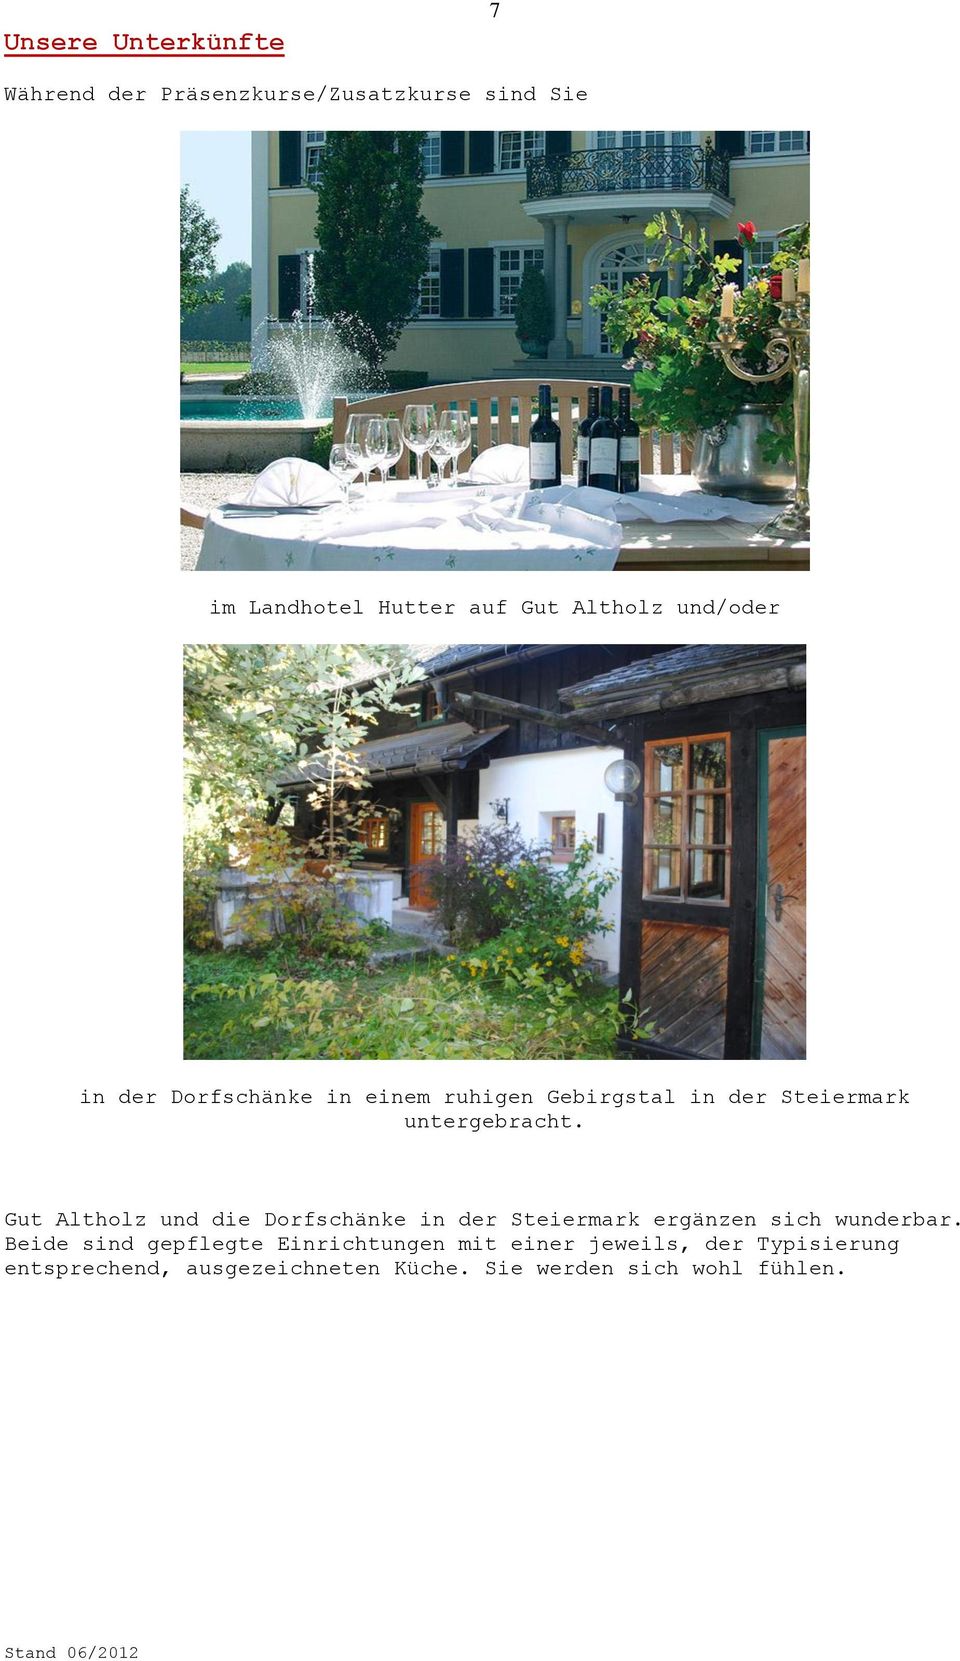 Gut Altholz und die Dorfschänke in der Steiermark ergänzen sich wunderbar.